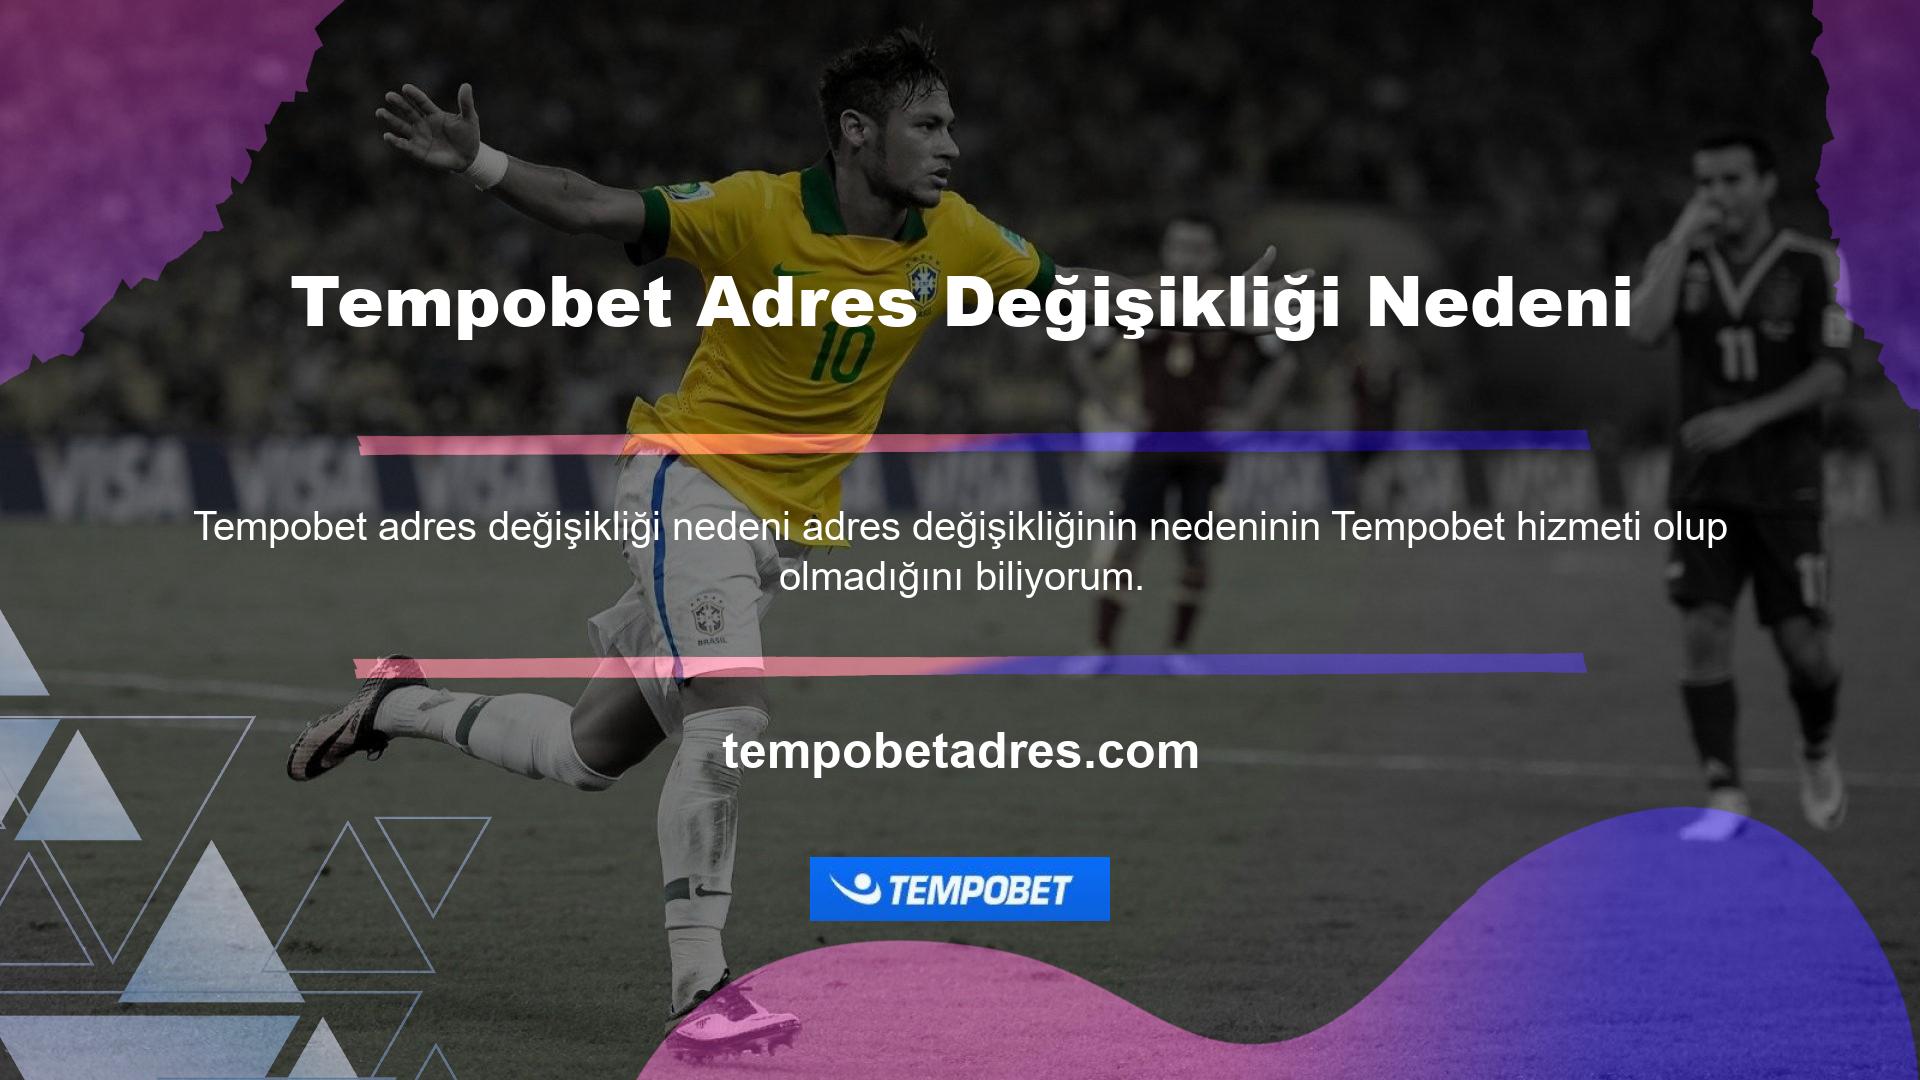 Tempobet adres değişikliğinin nedenleri: Blackjack, bakara, rulet, poker, canlı bingo ve slot makineleri gibi oyunlar bu anlamda Türkiye'de çevrimiçi Tempobet oyunları olarak tanınmamaktadır